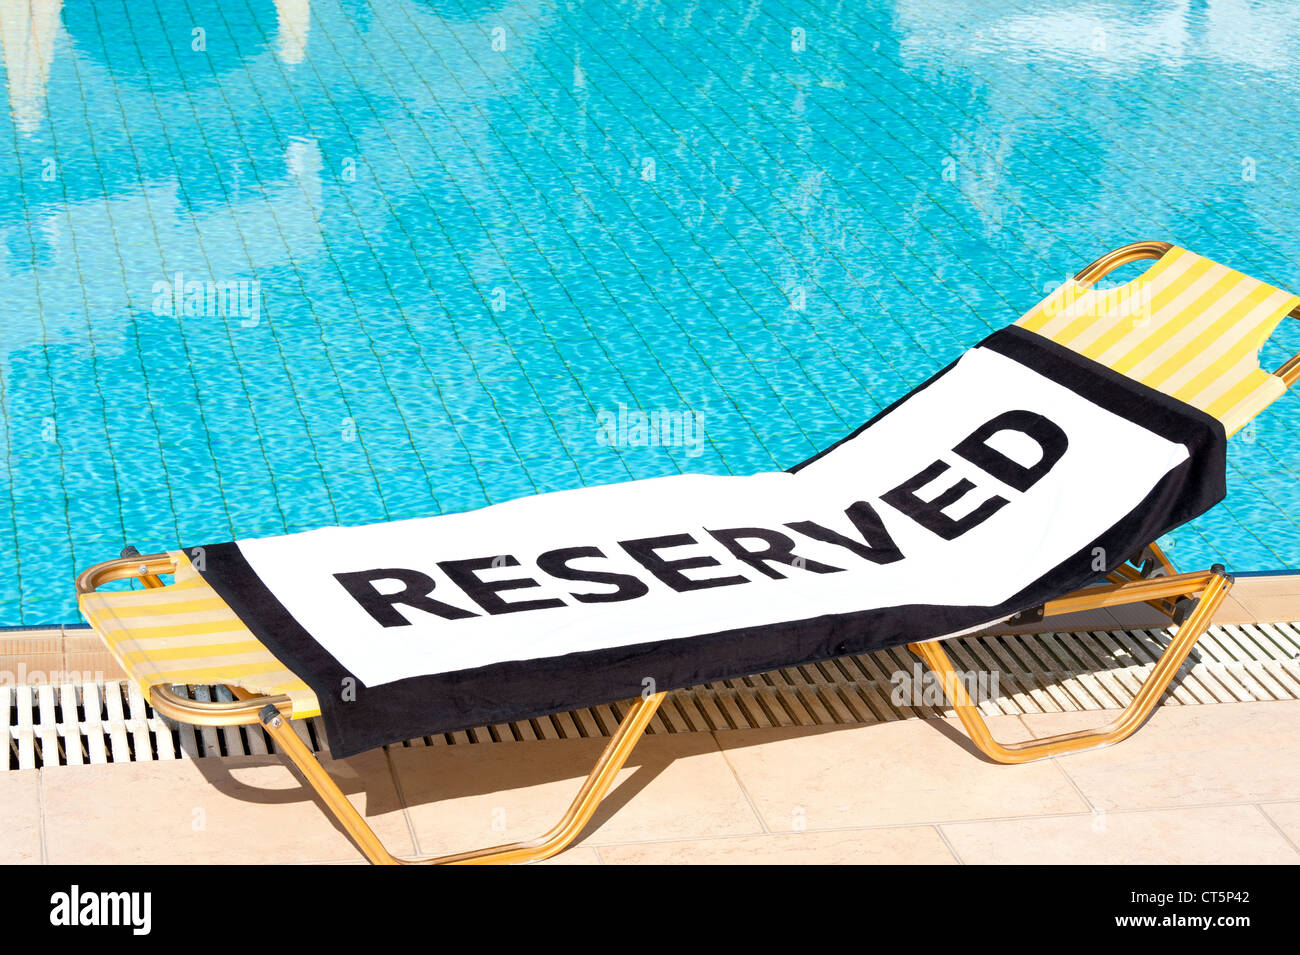 Ein Strandtuch mit dem Wort "Reserviert" zu verbreiten, auf einem Liegestuhl neben einem Schwimmbad Stockfoto